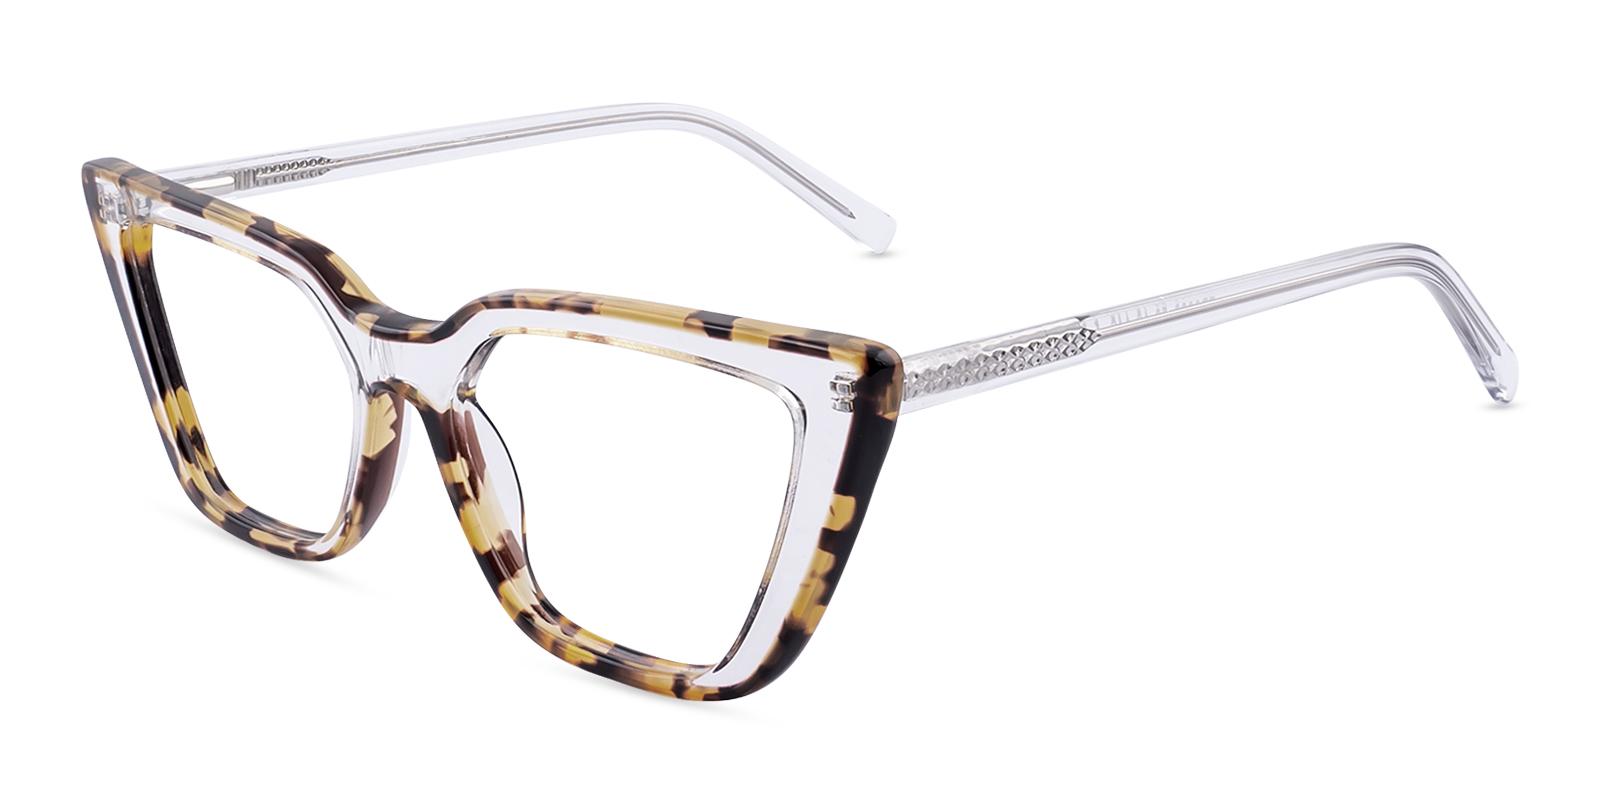 Happenia Tortoise Acetate Eyeglasses , SpringHinges , UniversalBridgeFit Frames from ABBE Glasses